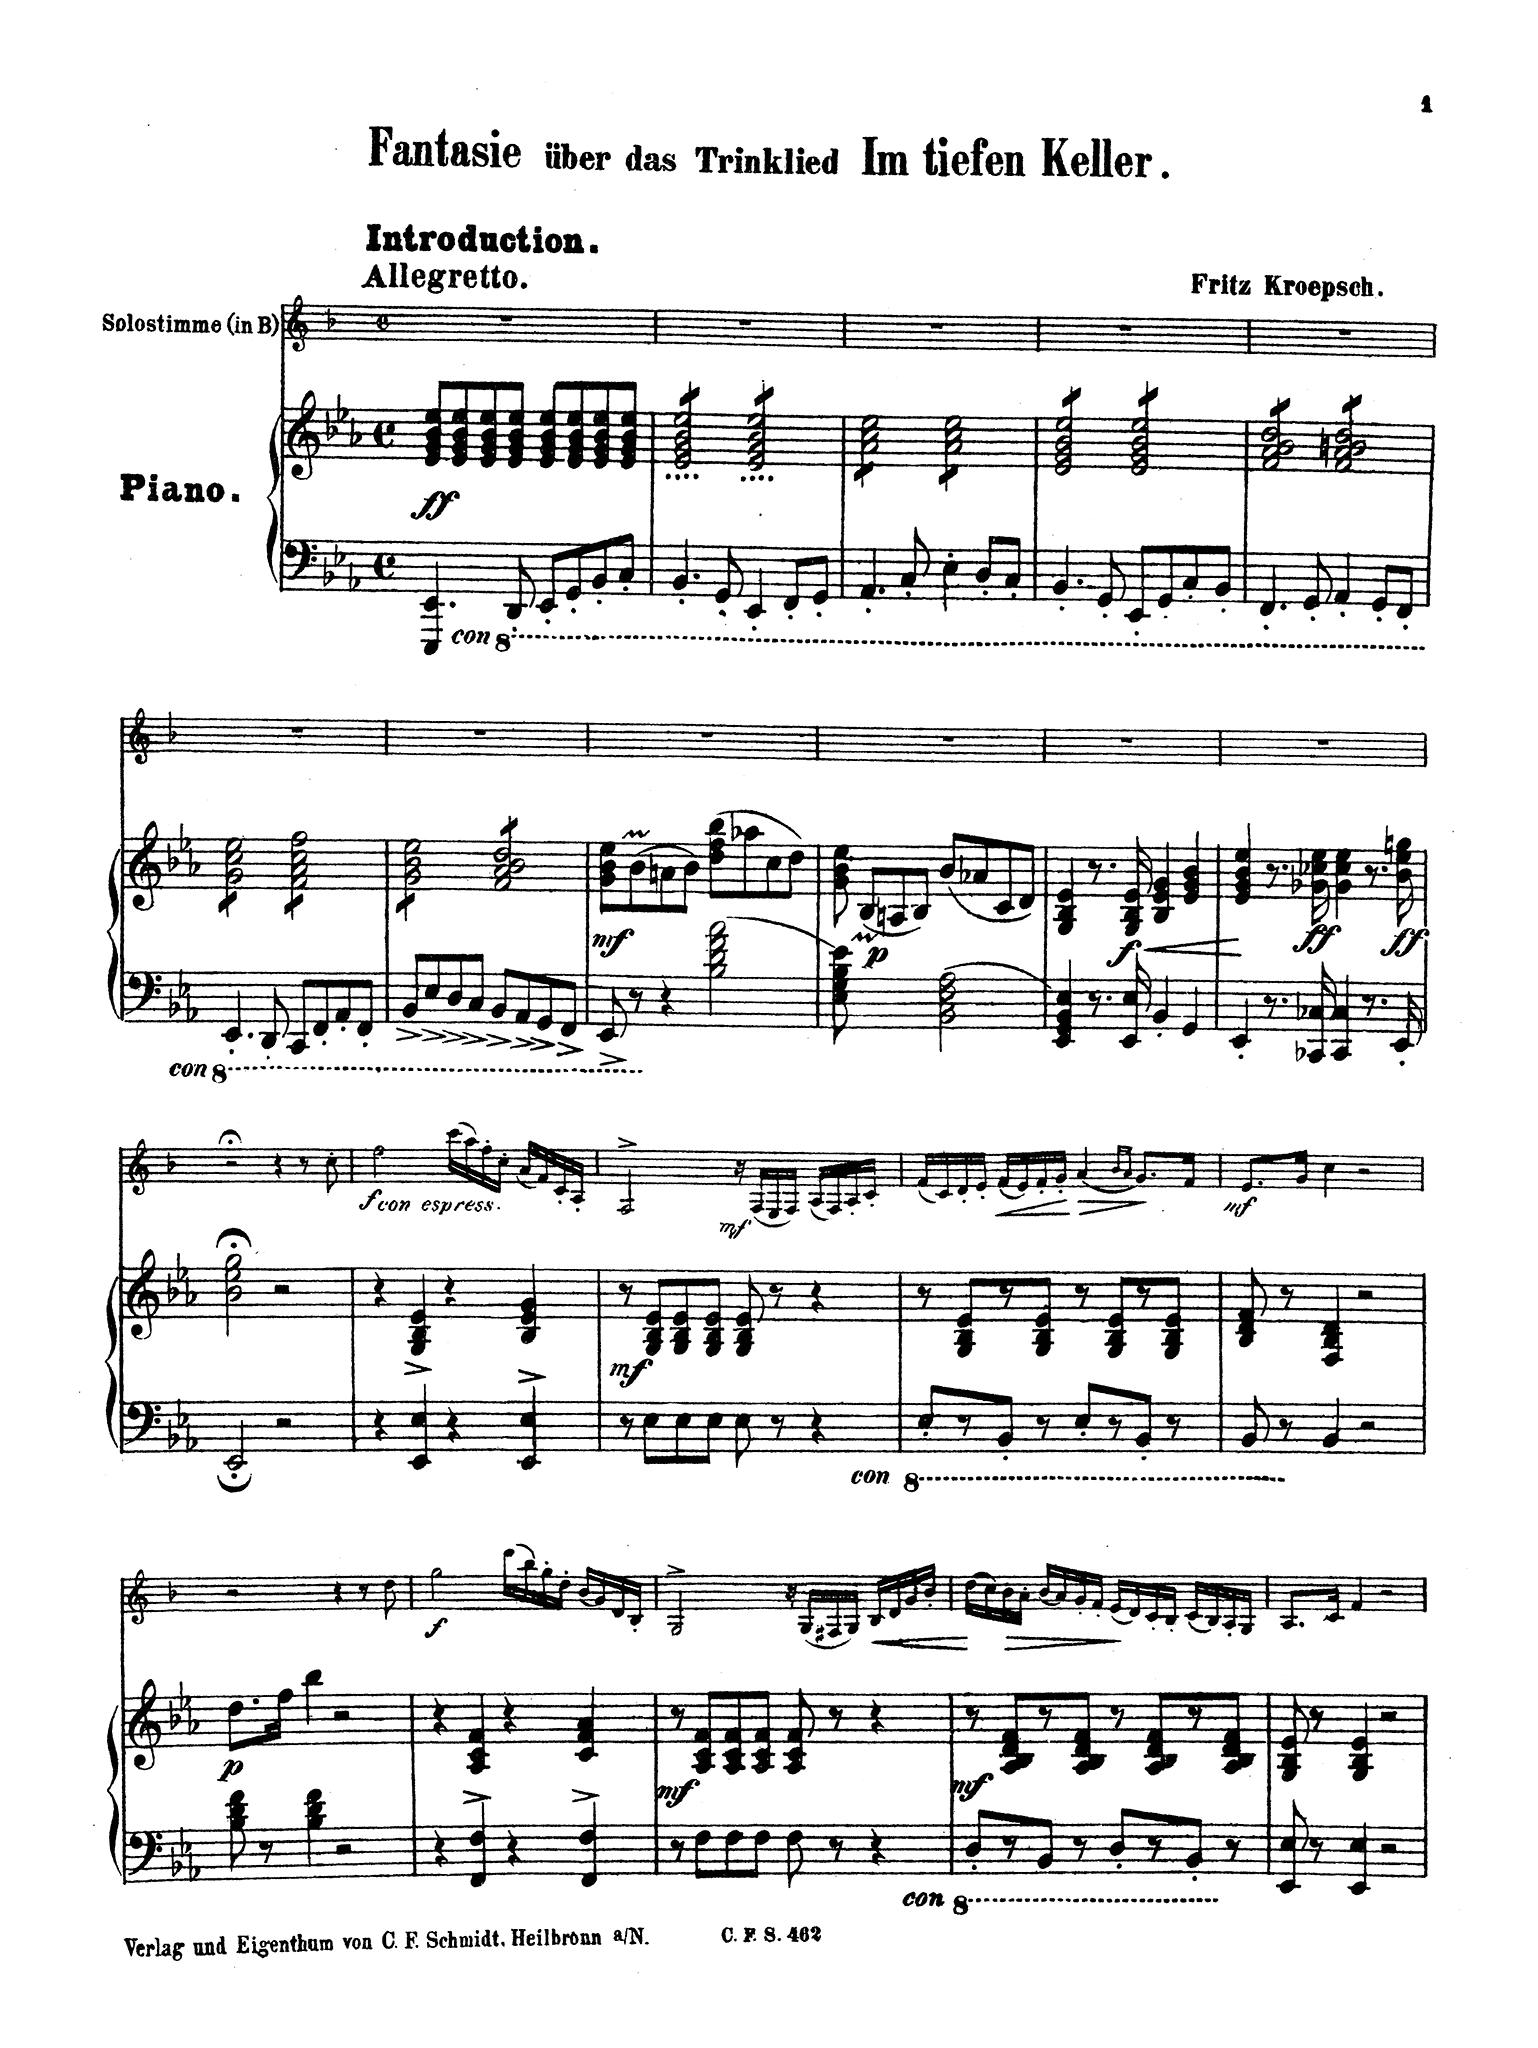 Kroepsch Im tiefen Keller variations clarinet and piano score